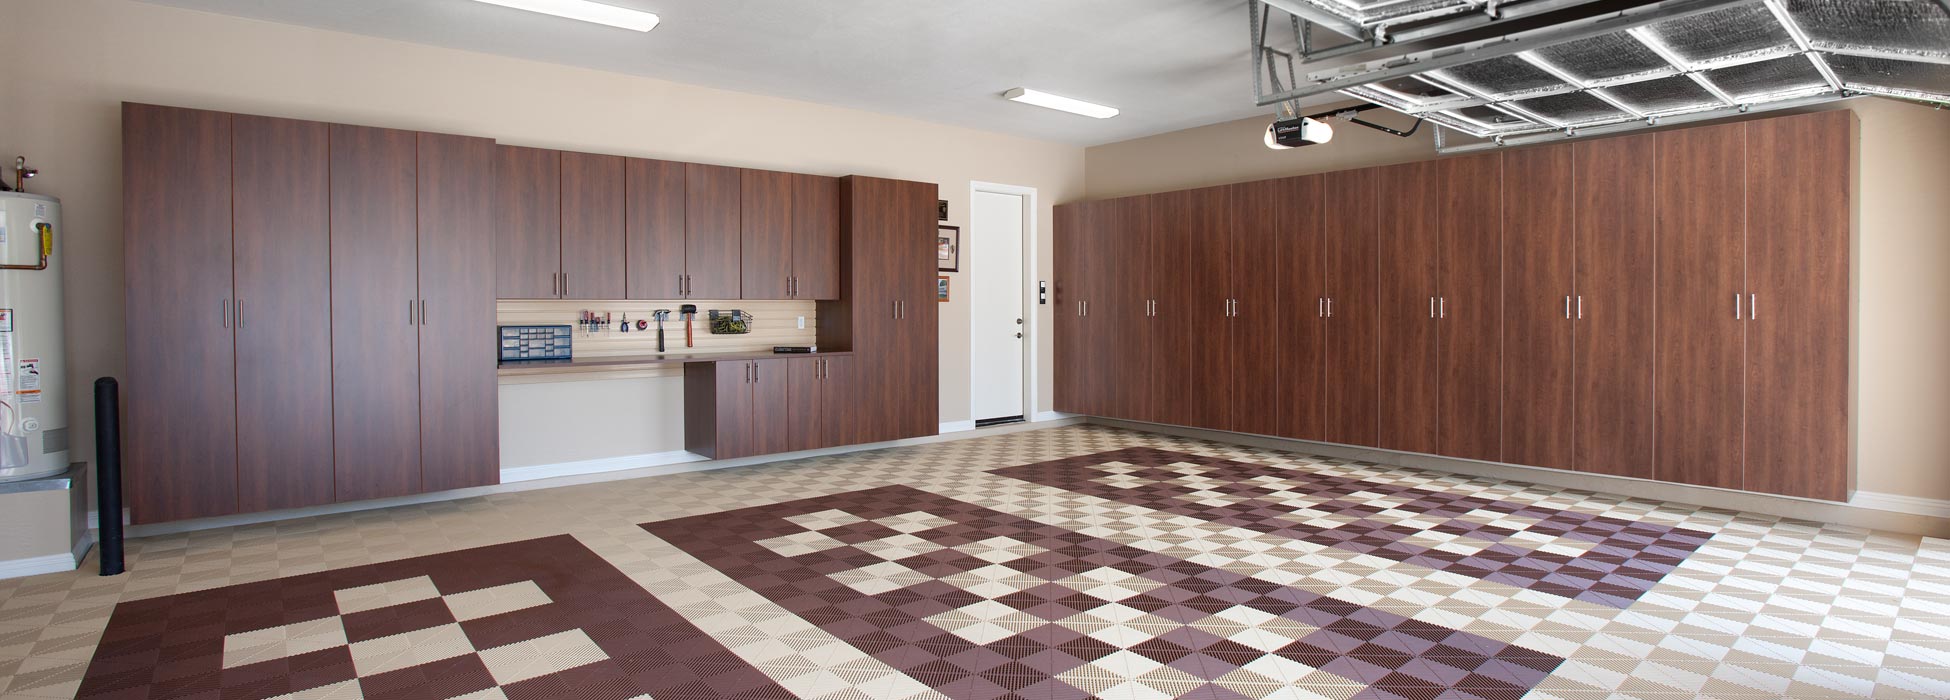 Garage Flooring - Tiles, Rolls, Epoxy, Cabinets & Storage